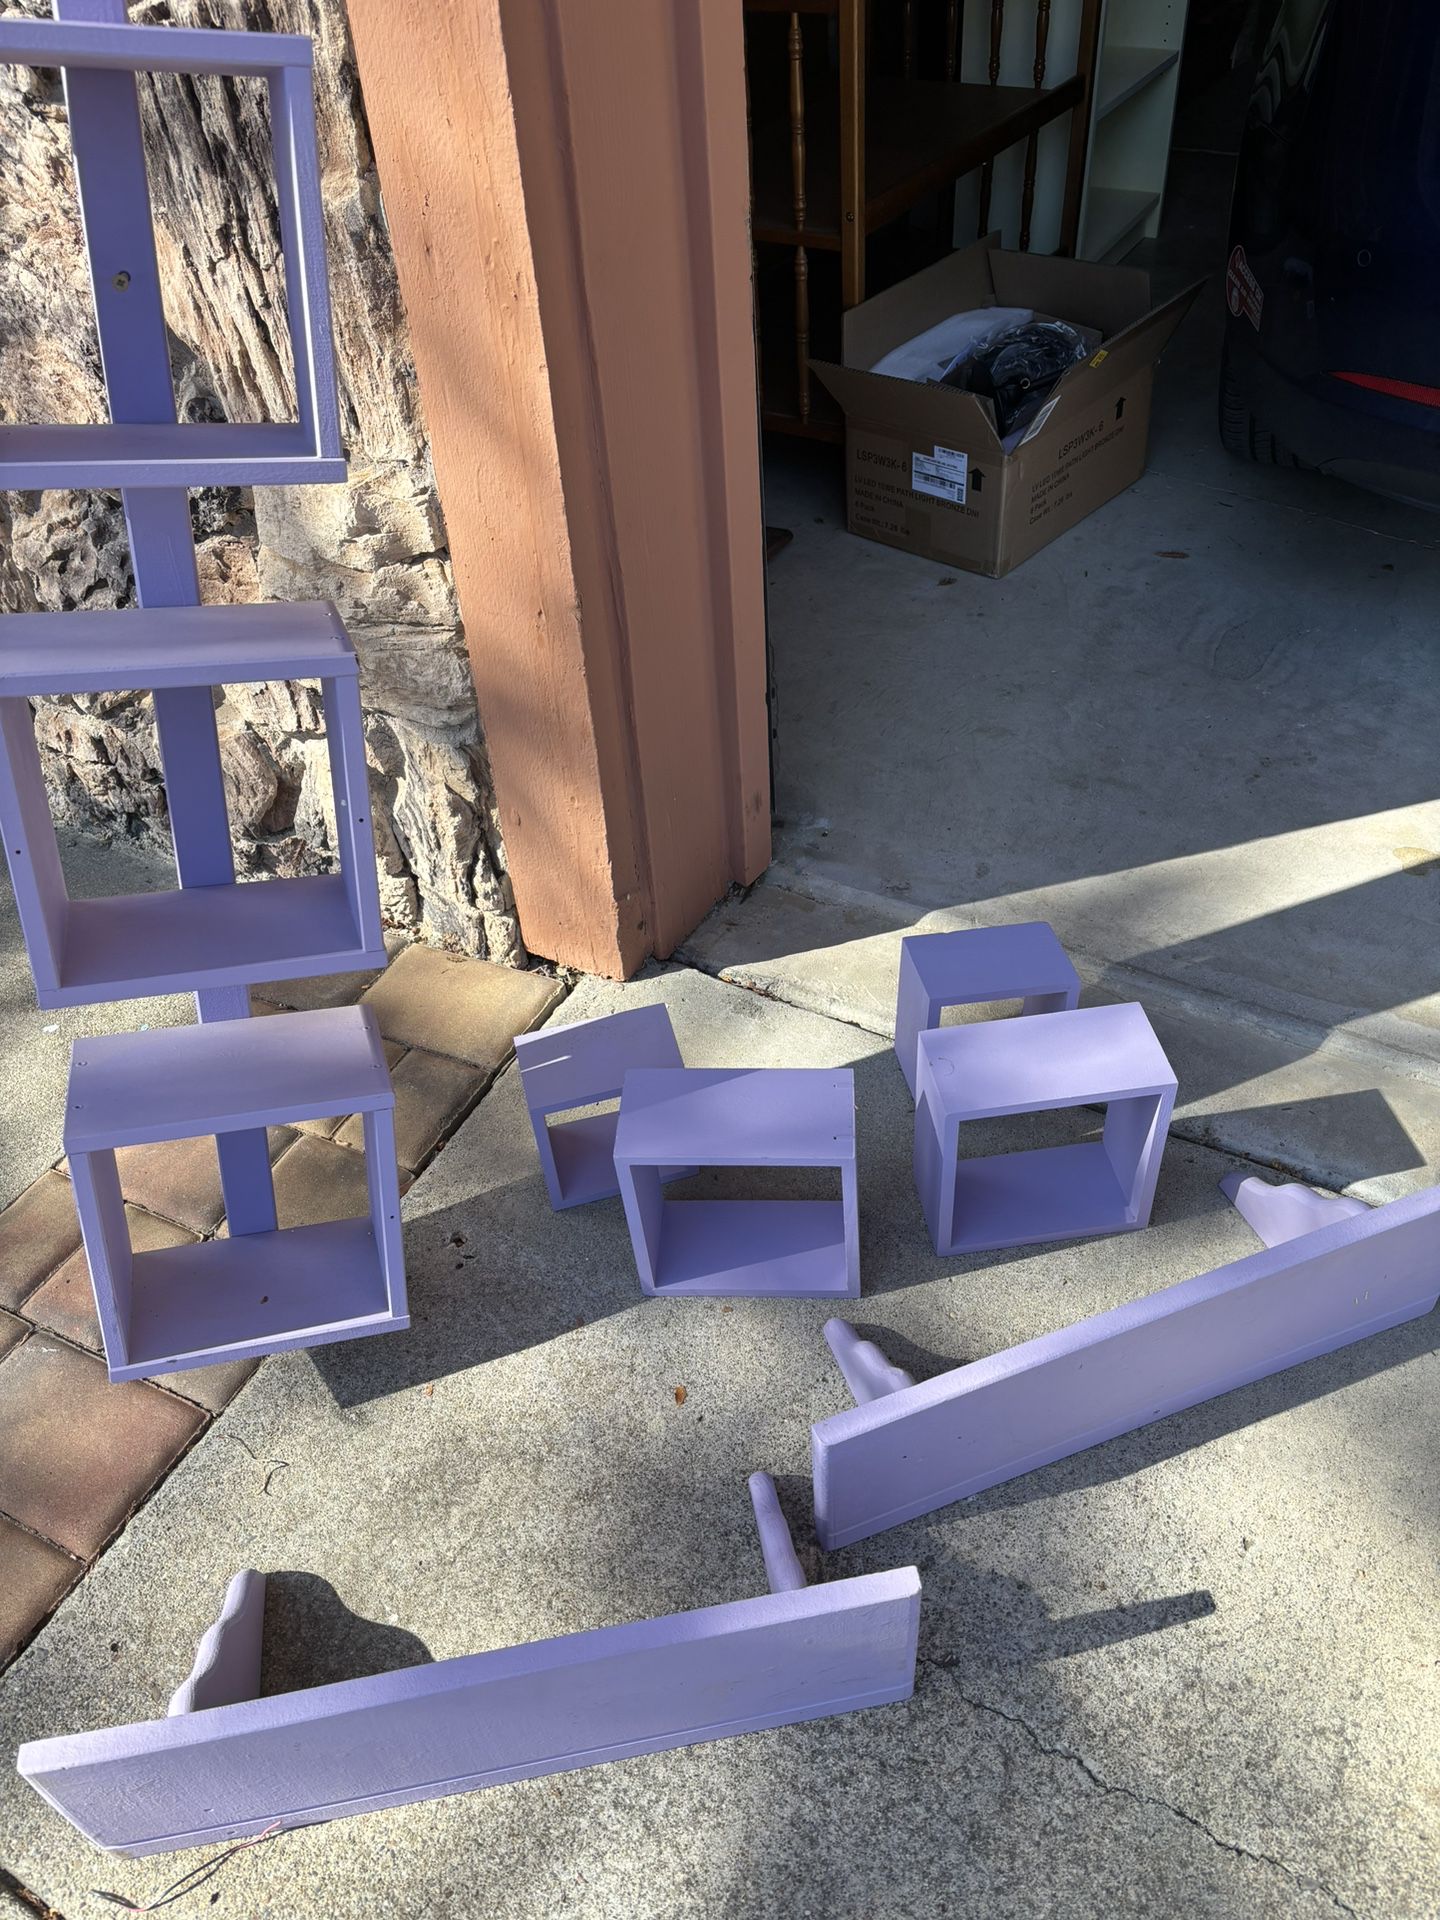 Five Cube Wall Unit, 2 Shelves Plus 4 Cubes in Purple Color.